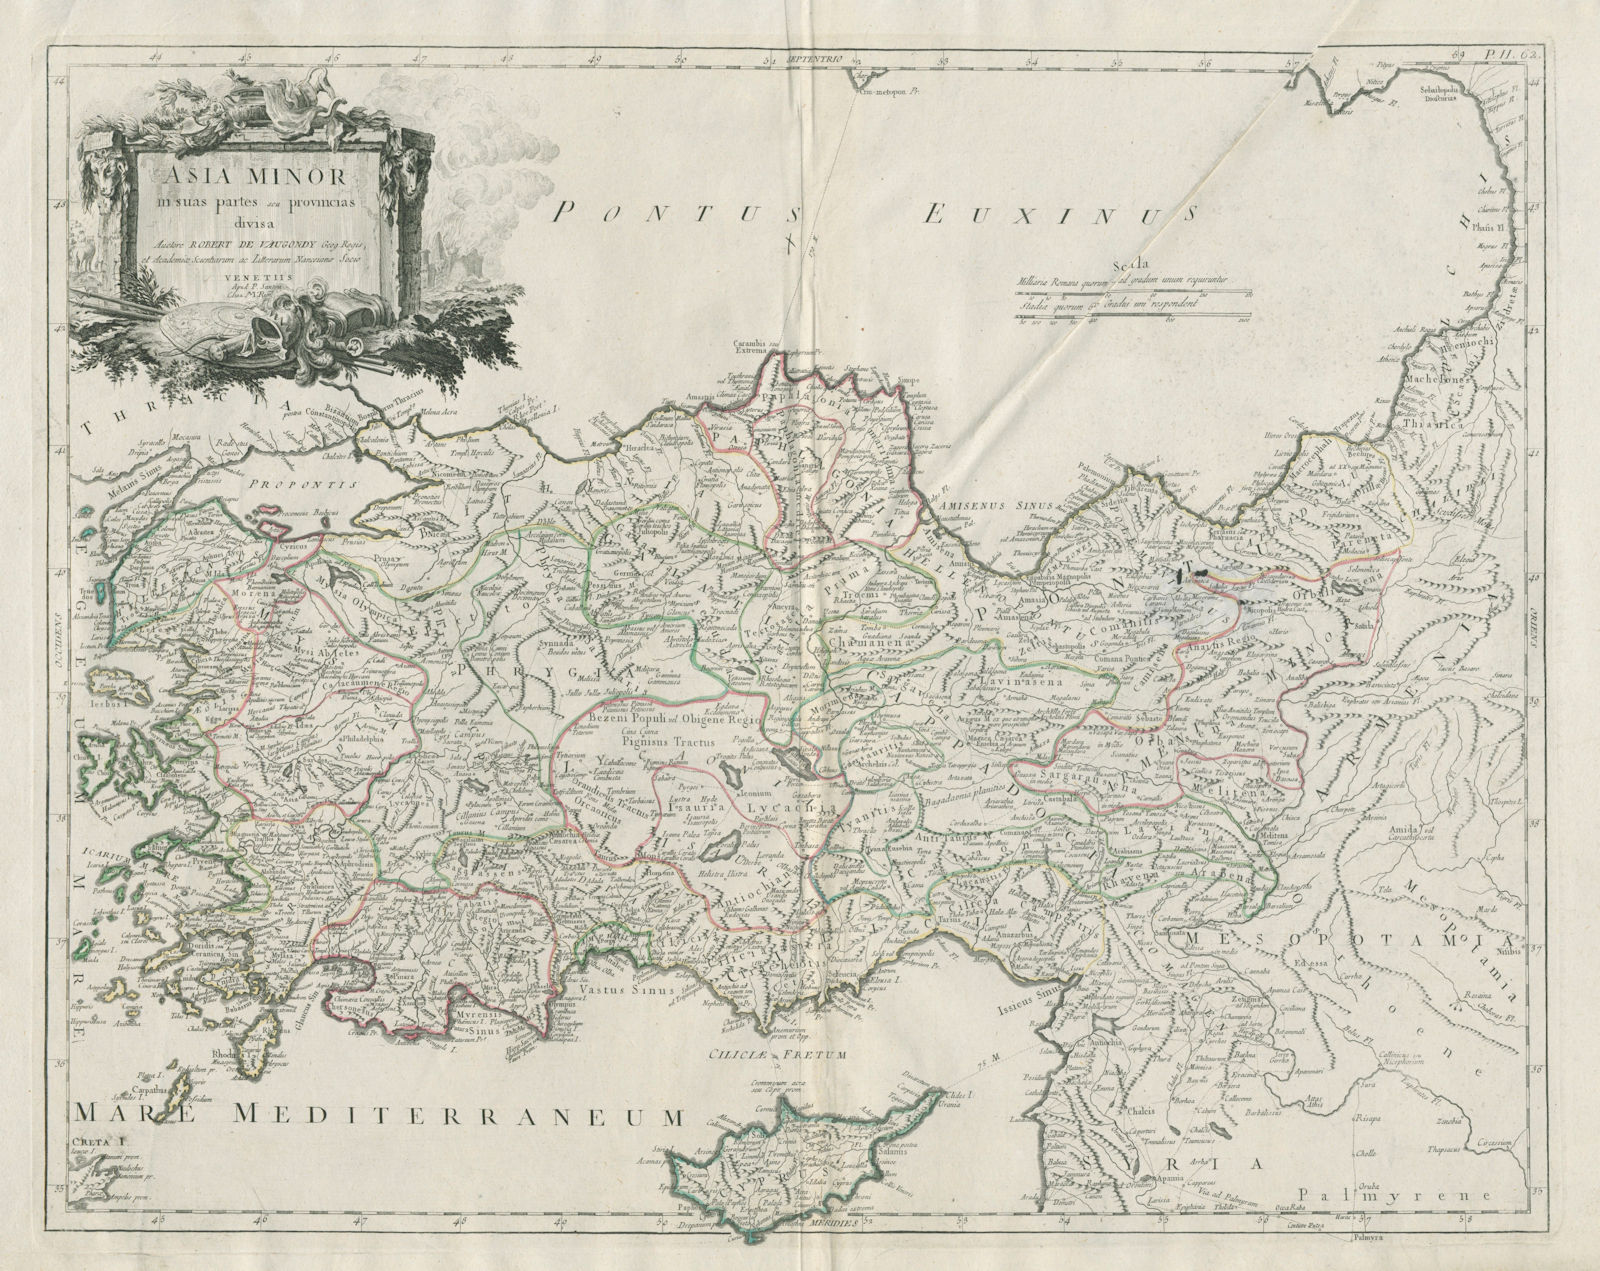 "Asia Minor in suas partes et Provincias divisa". SANTINI / VAUGONDY 1784 map